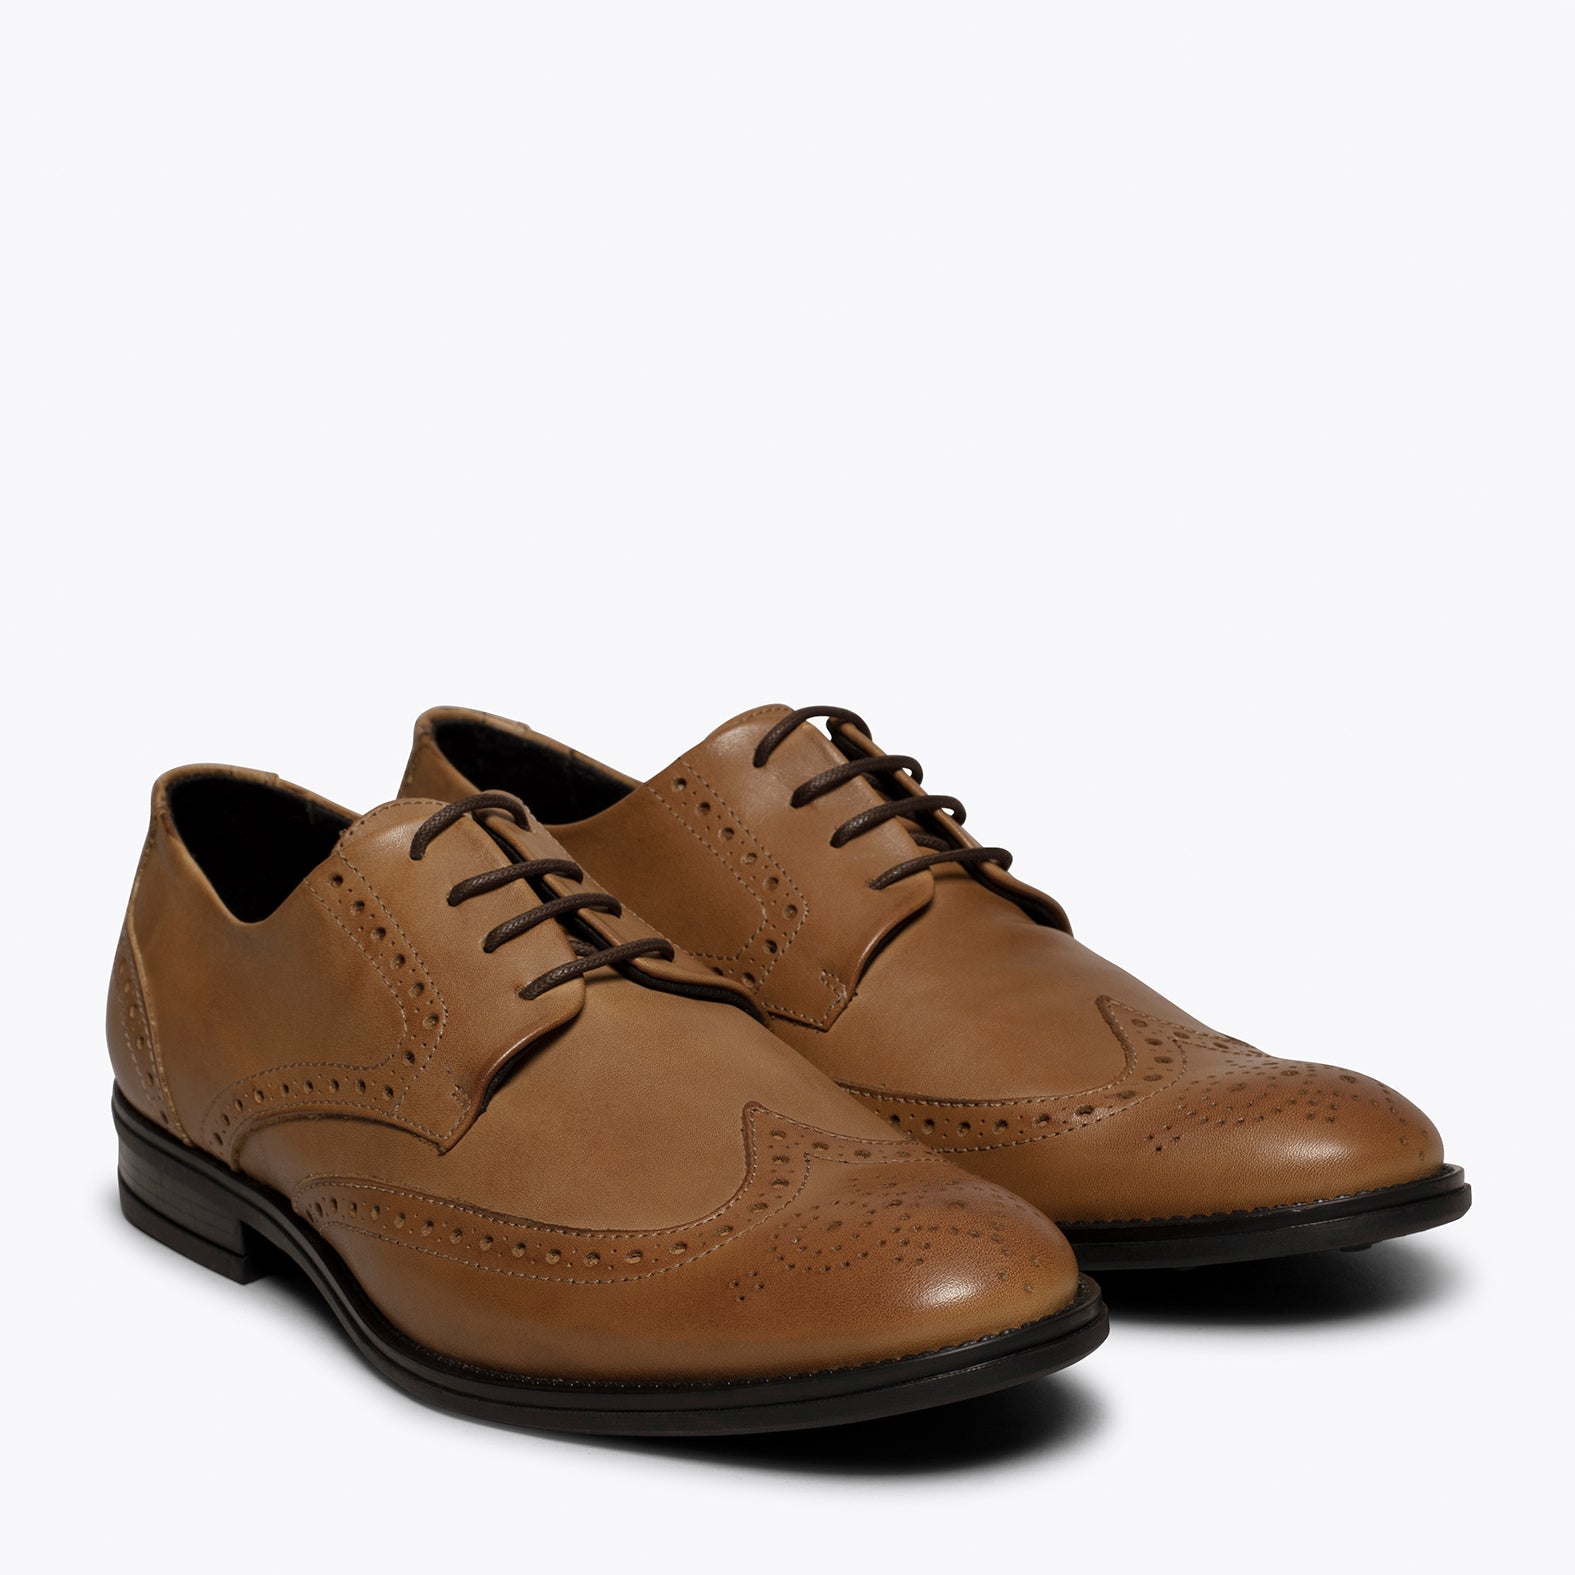 OXFORD- CAMEL Oxford shoe for men